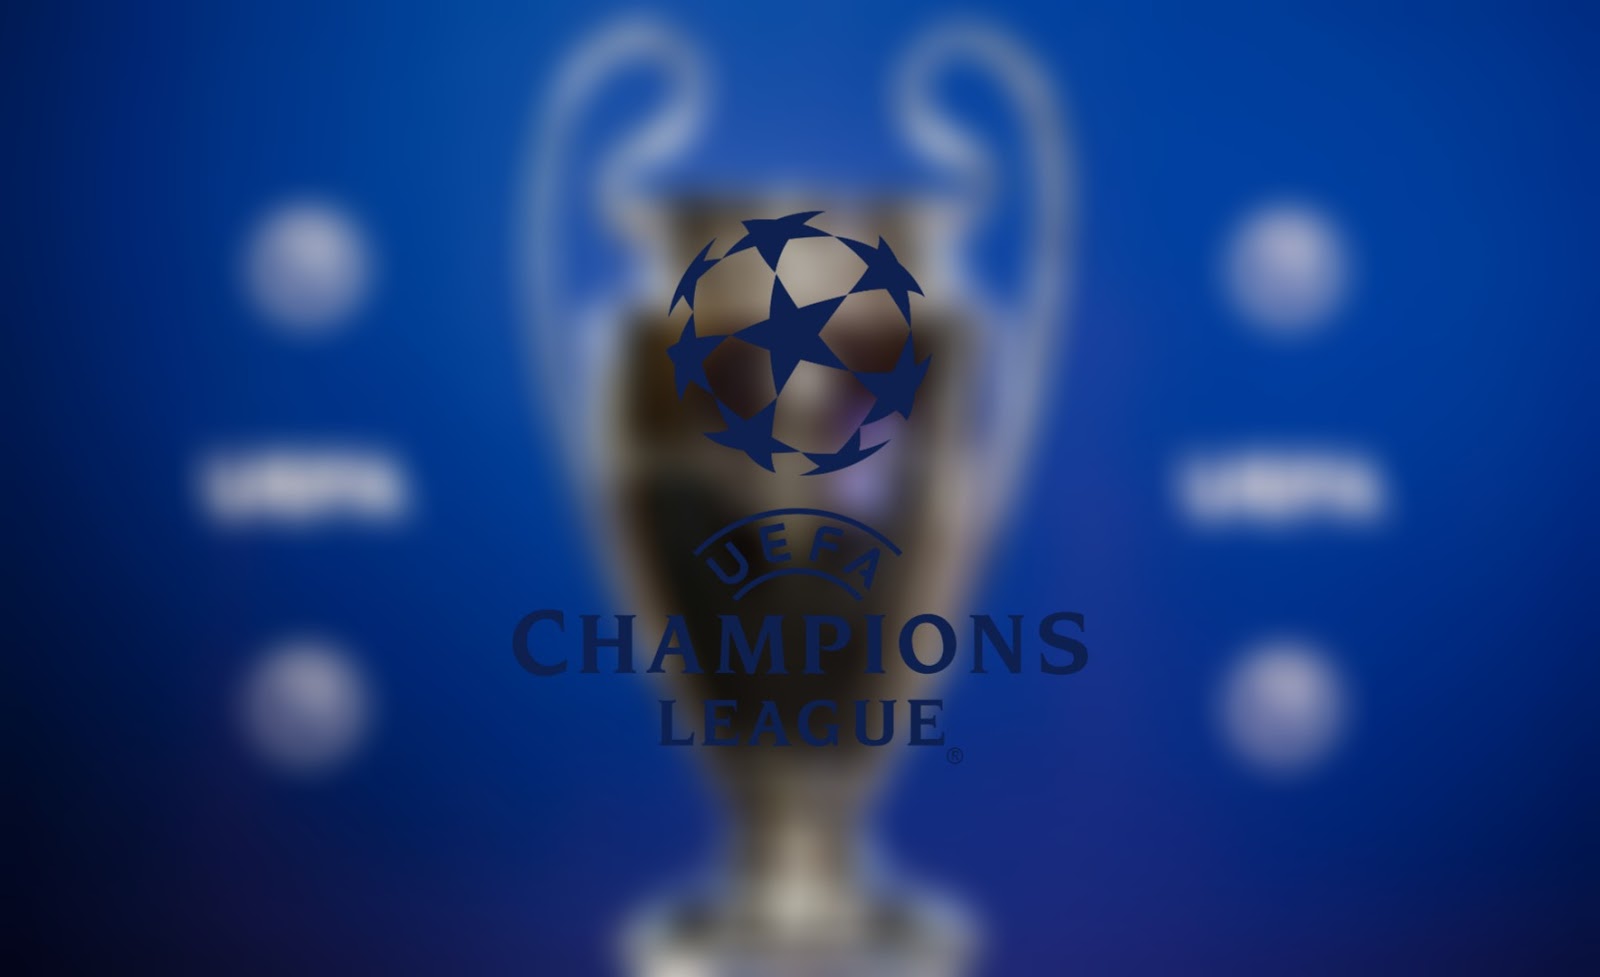 kedudukan champion league 2019